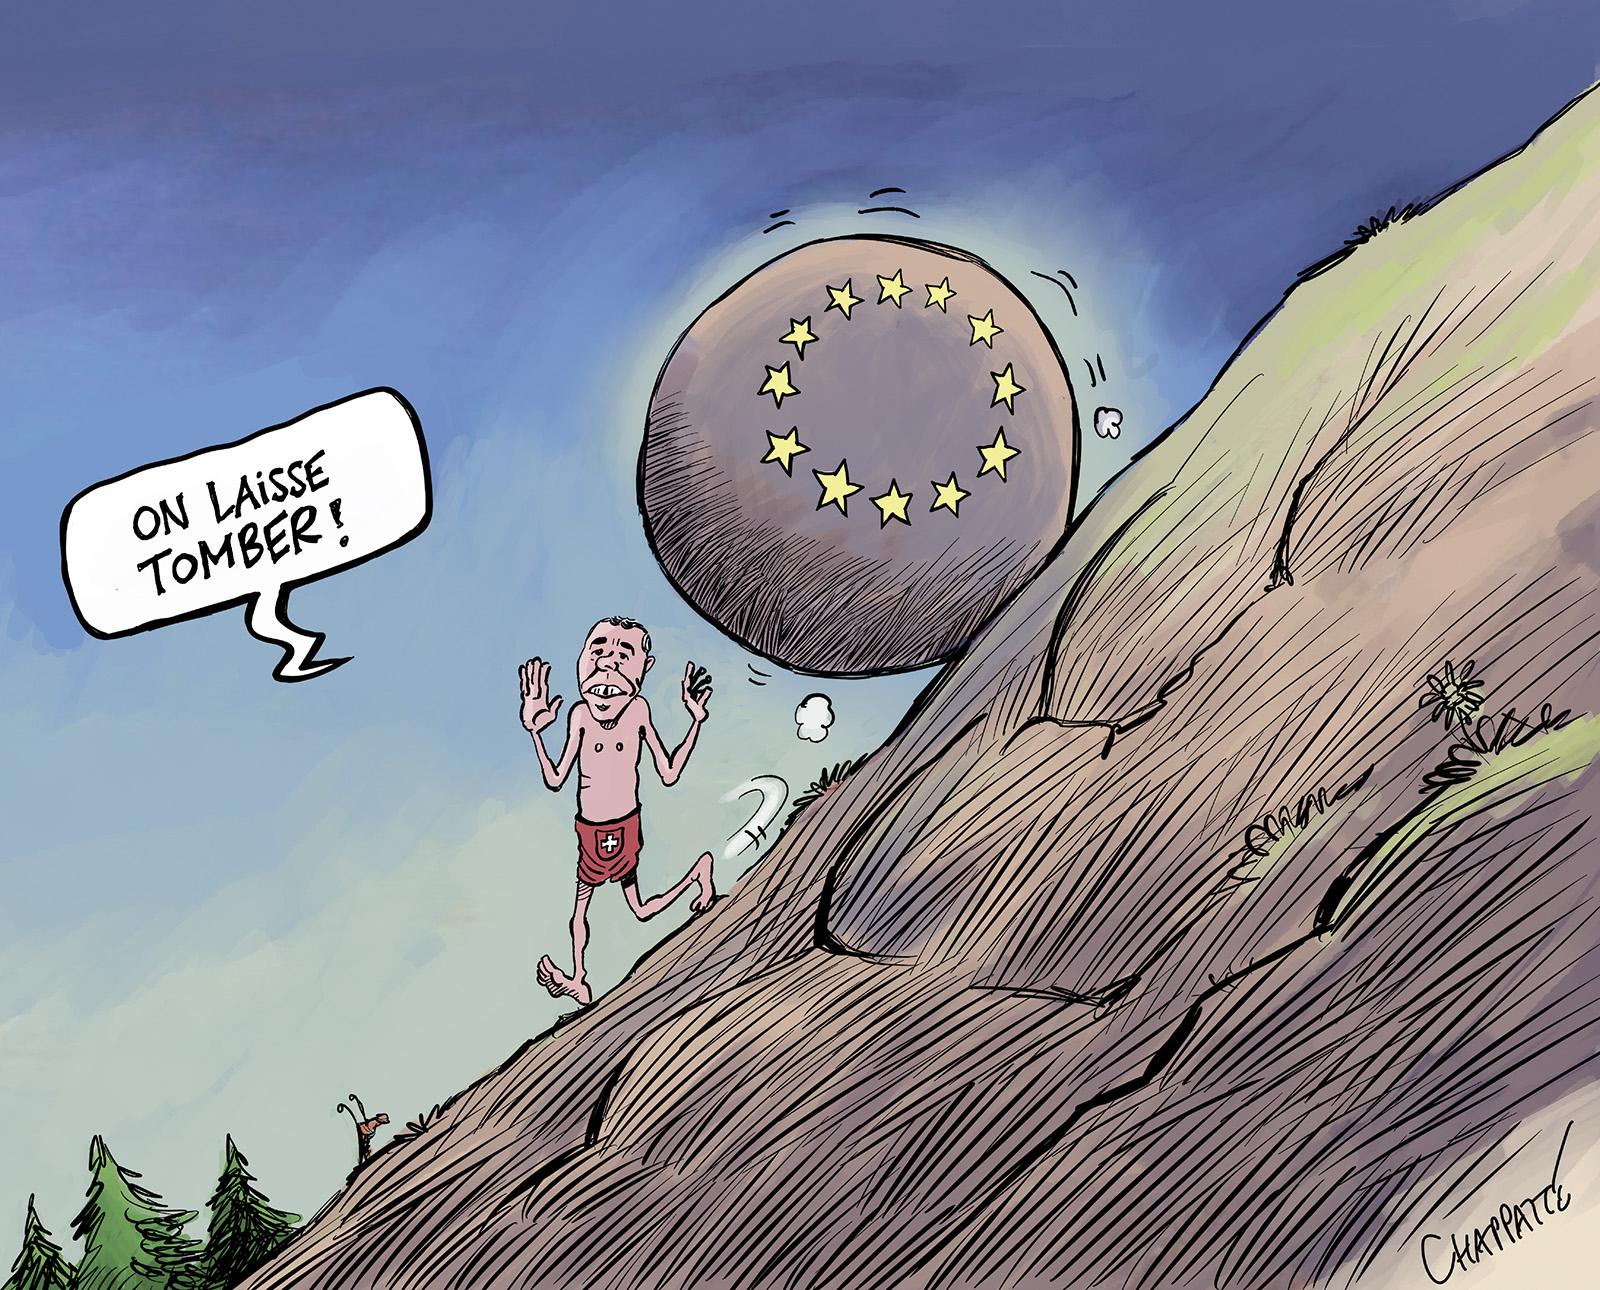 La Suisse renonce à l'accord-cadre avec l'UE